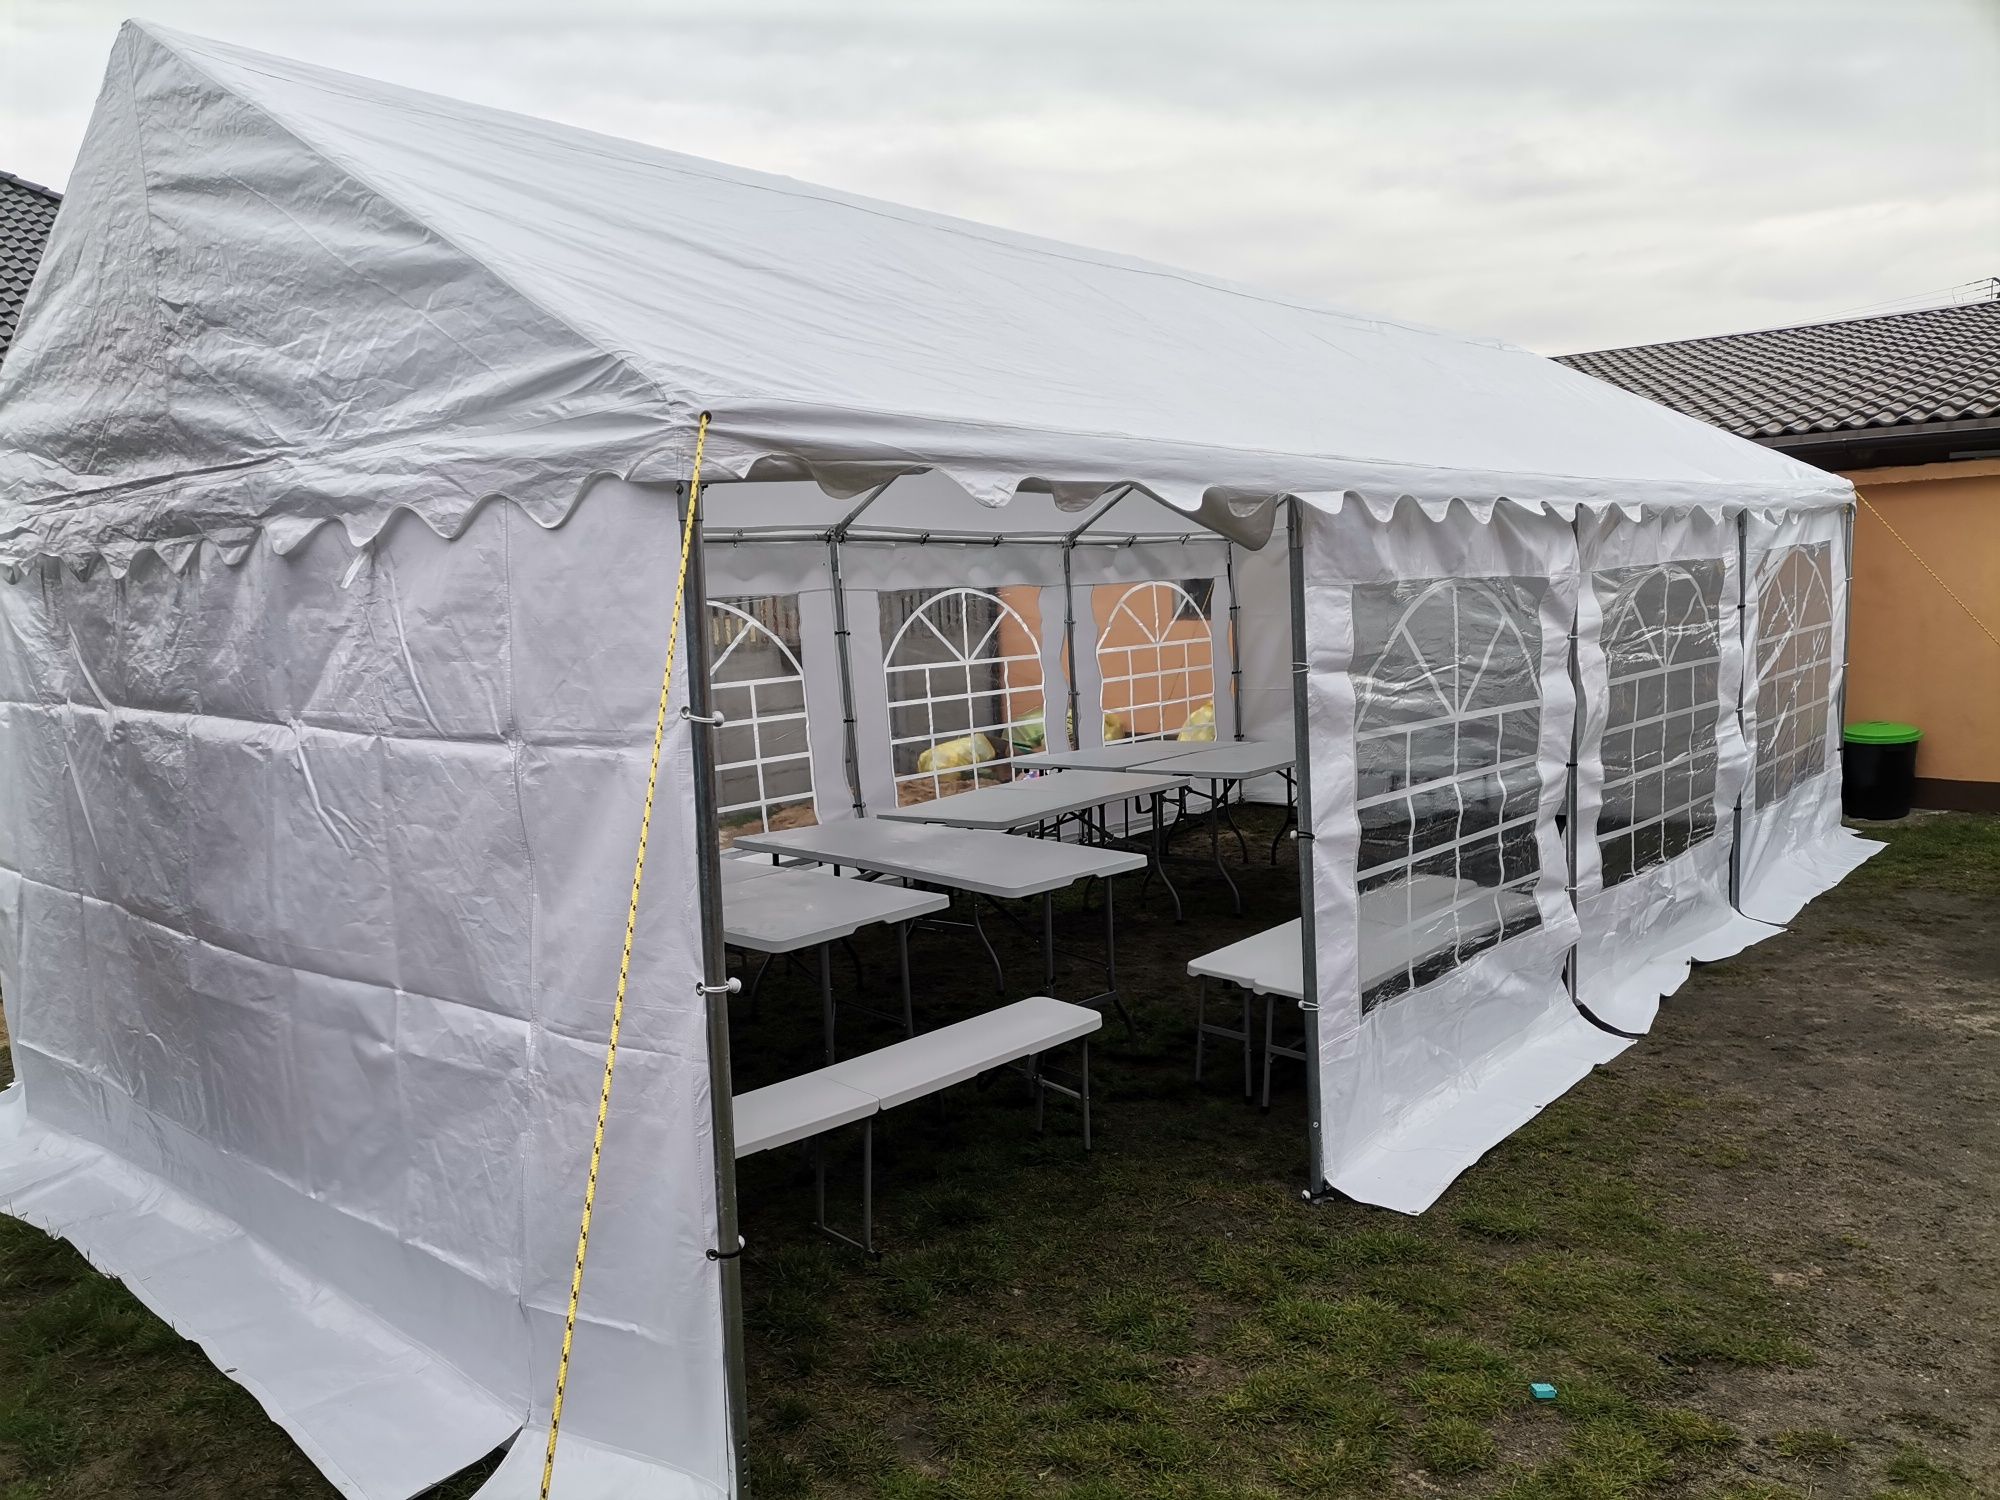 Pawilony imprezowe namioty ogrodowe urodziny komunia